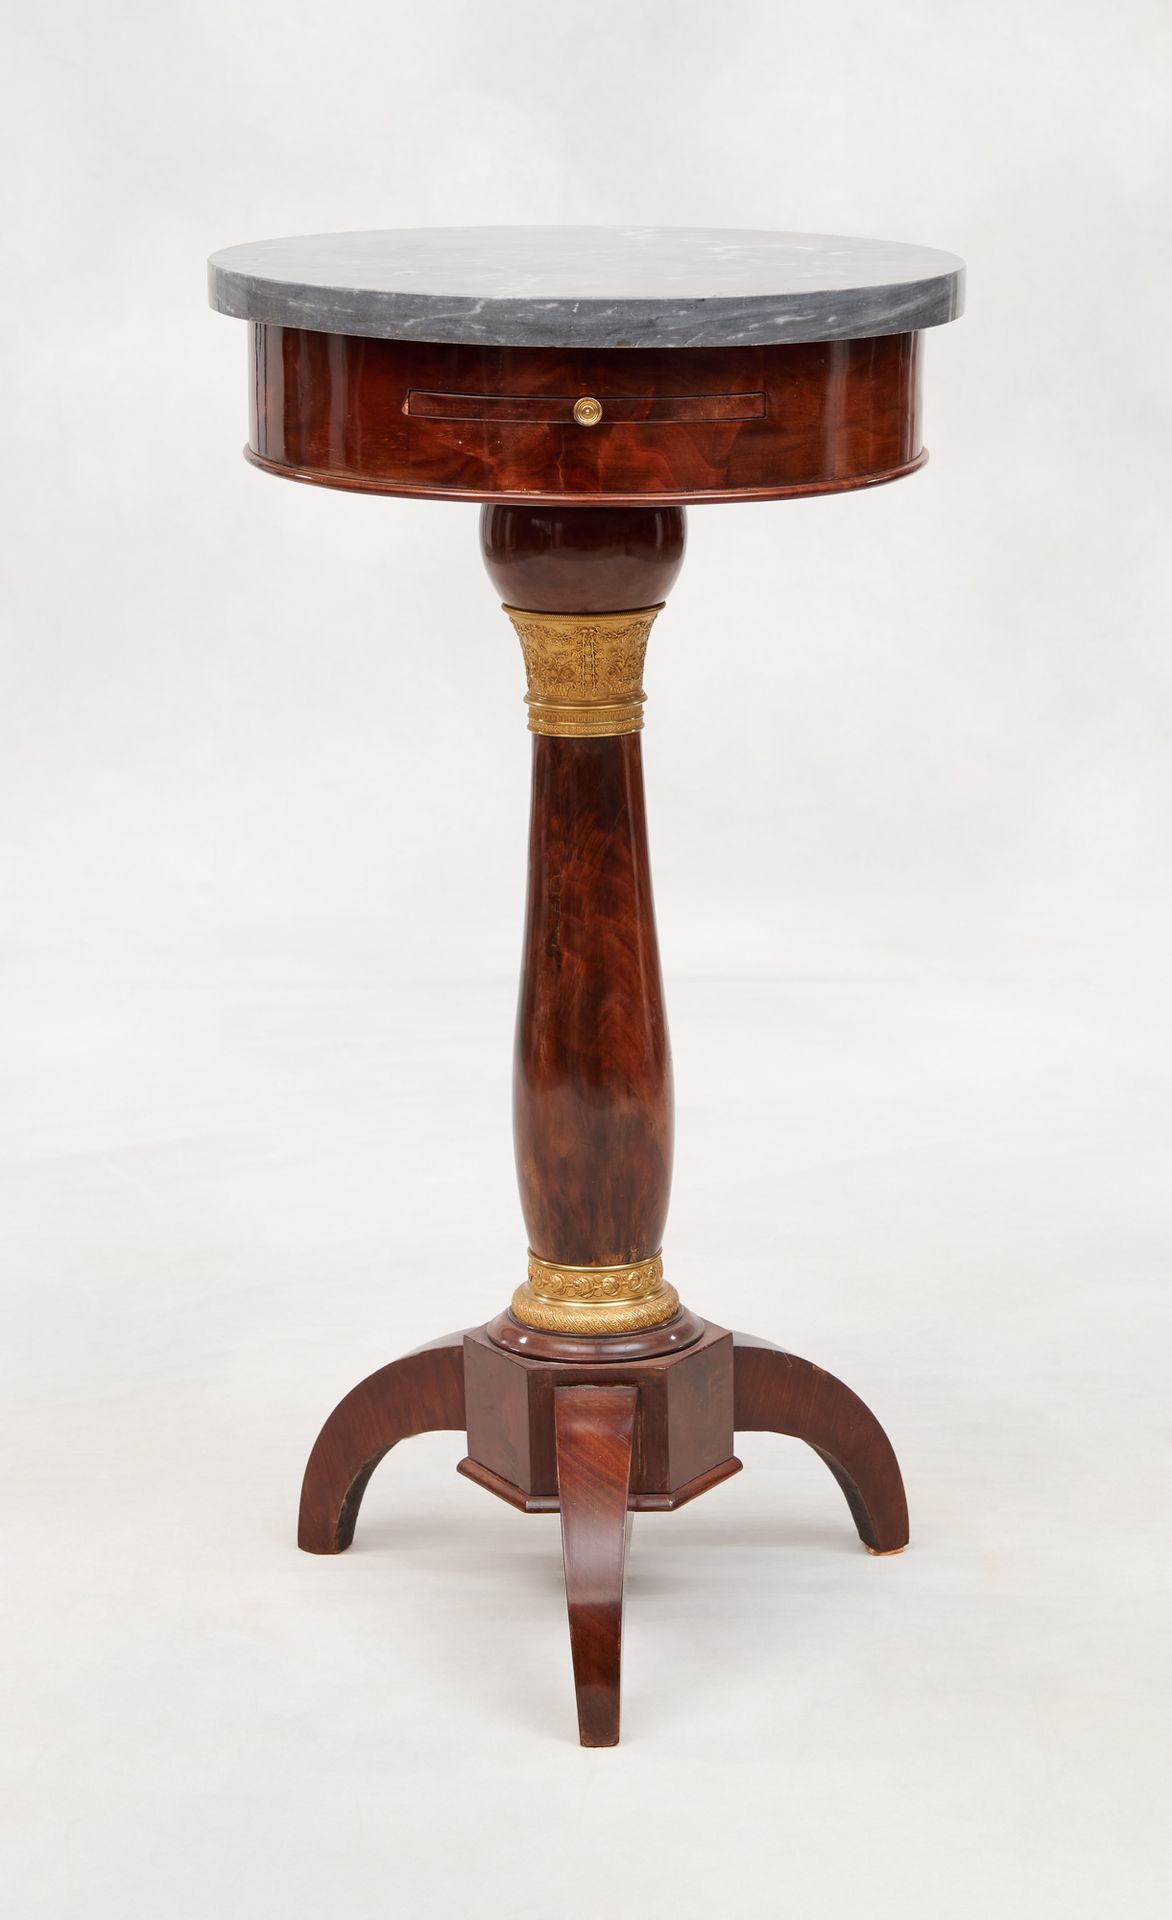 Travail du 19e. 家具：小型桃花心木贴面基座桌，中心轴靠在三条腿上，上面有一个绿松石的大理石架子。

尺寸：高：77直径41厘米。